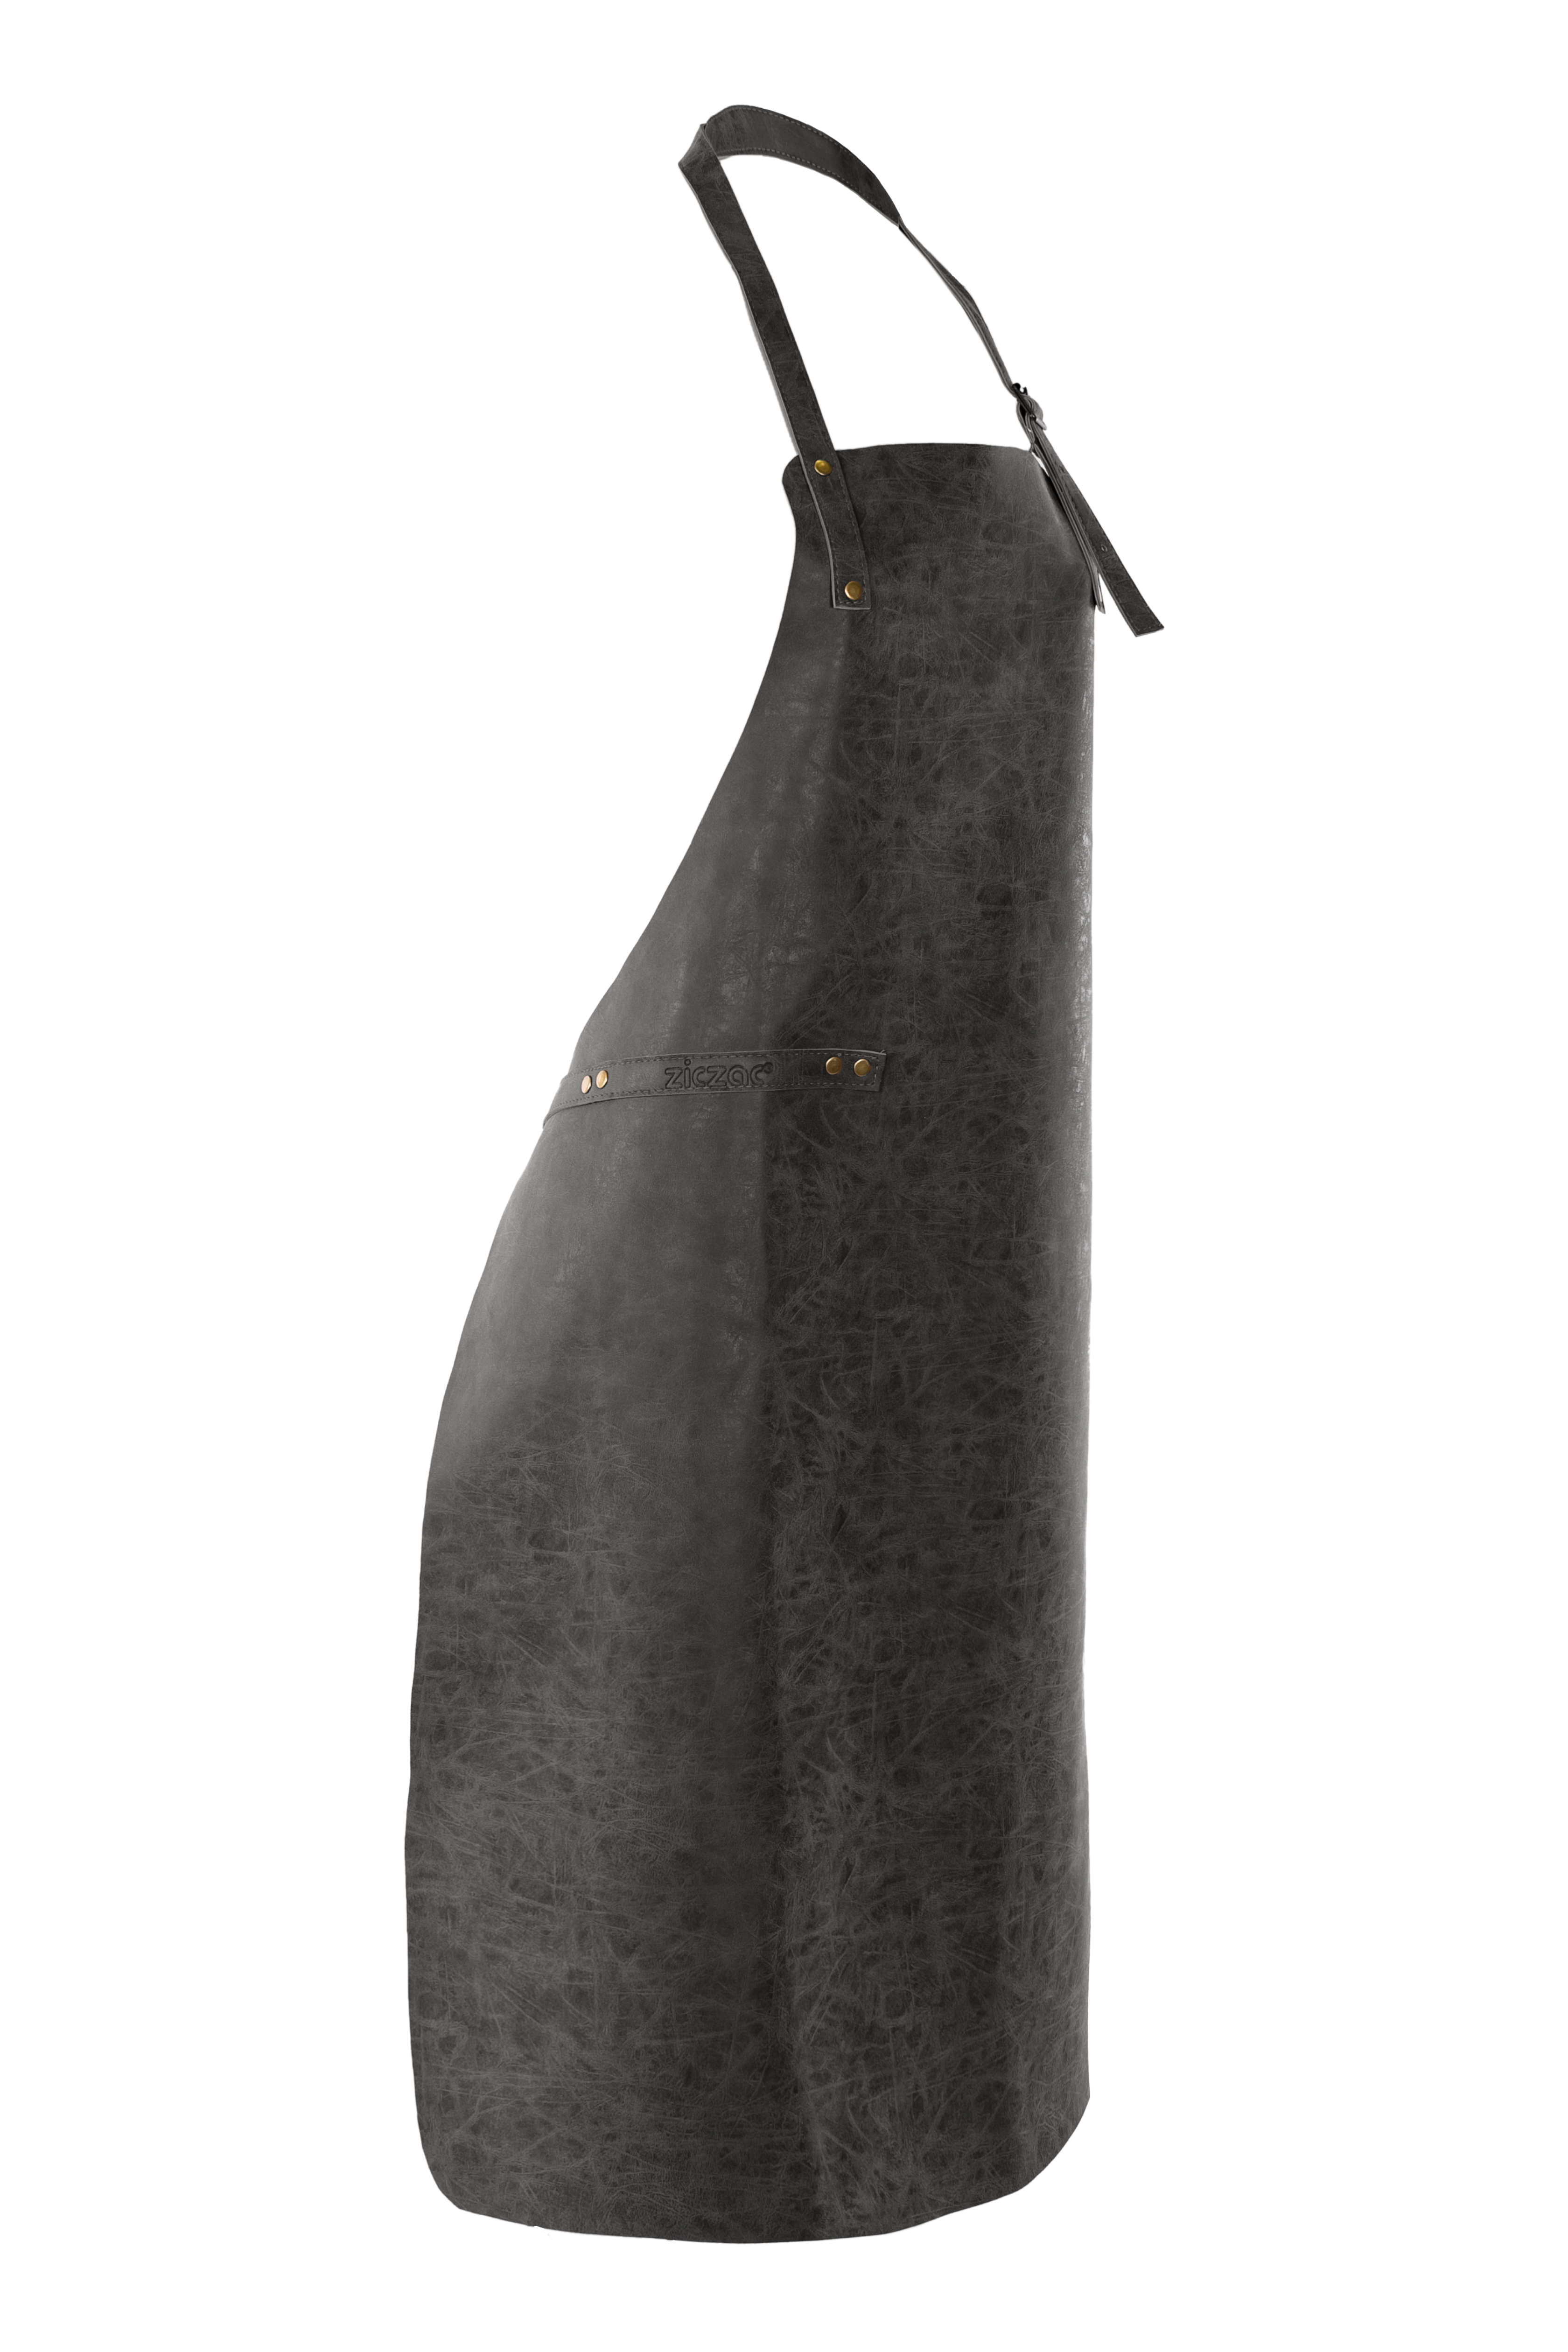 Apron TRUMAN (Towel loop - no pocket - opt. Accessory bag), 70x90 cm, black